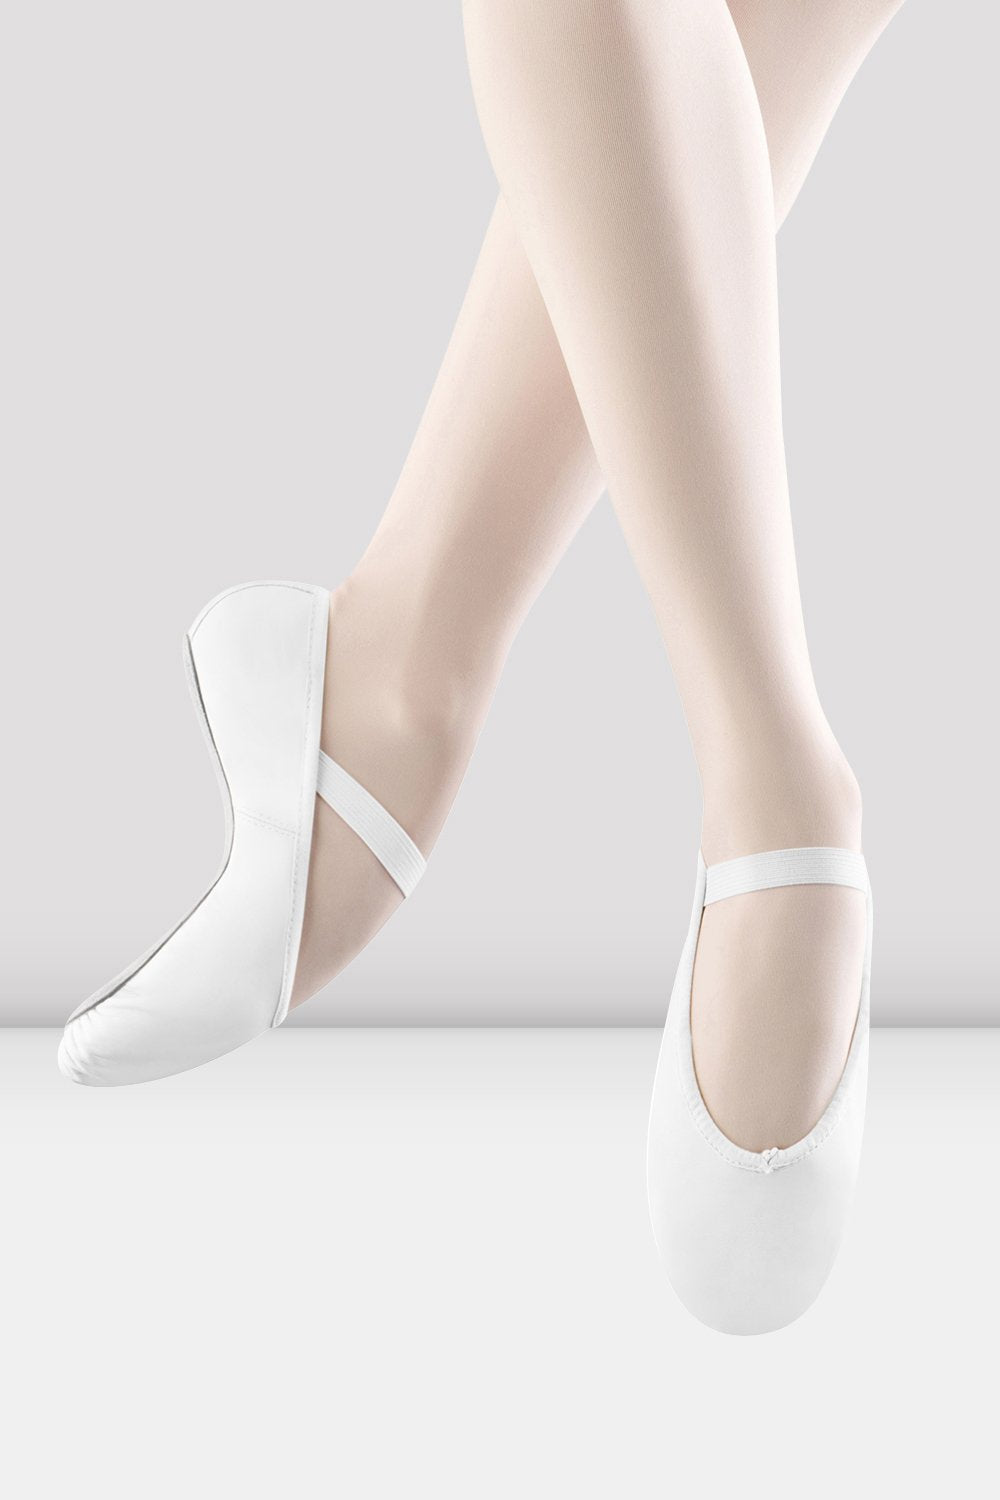 Zapatillas de ballet de cuero Arise para mujer, blancas | BLOCH – BLOCH Dance EU